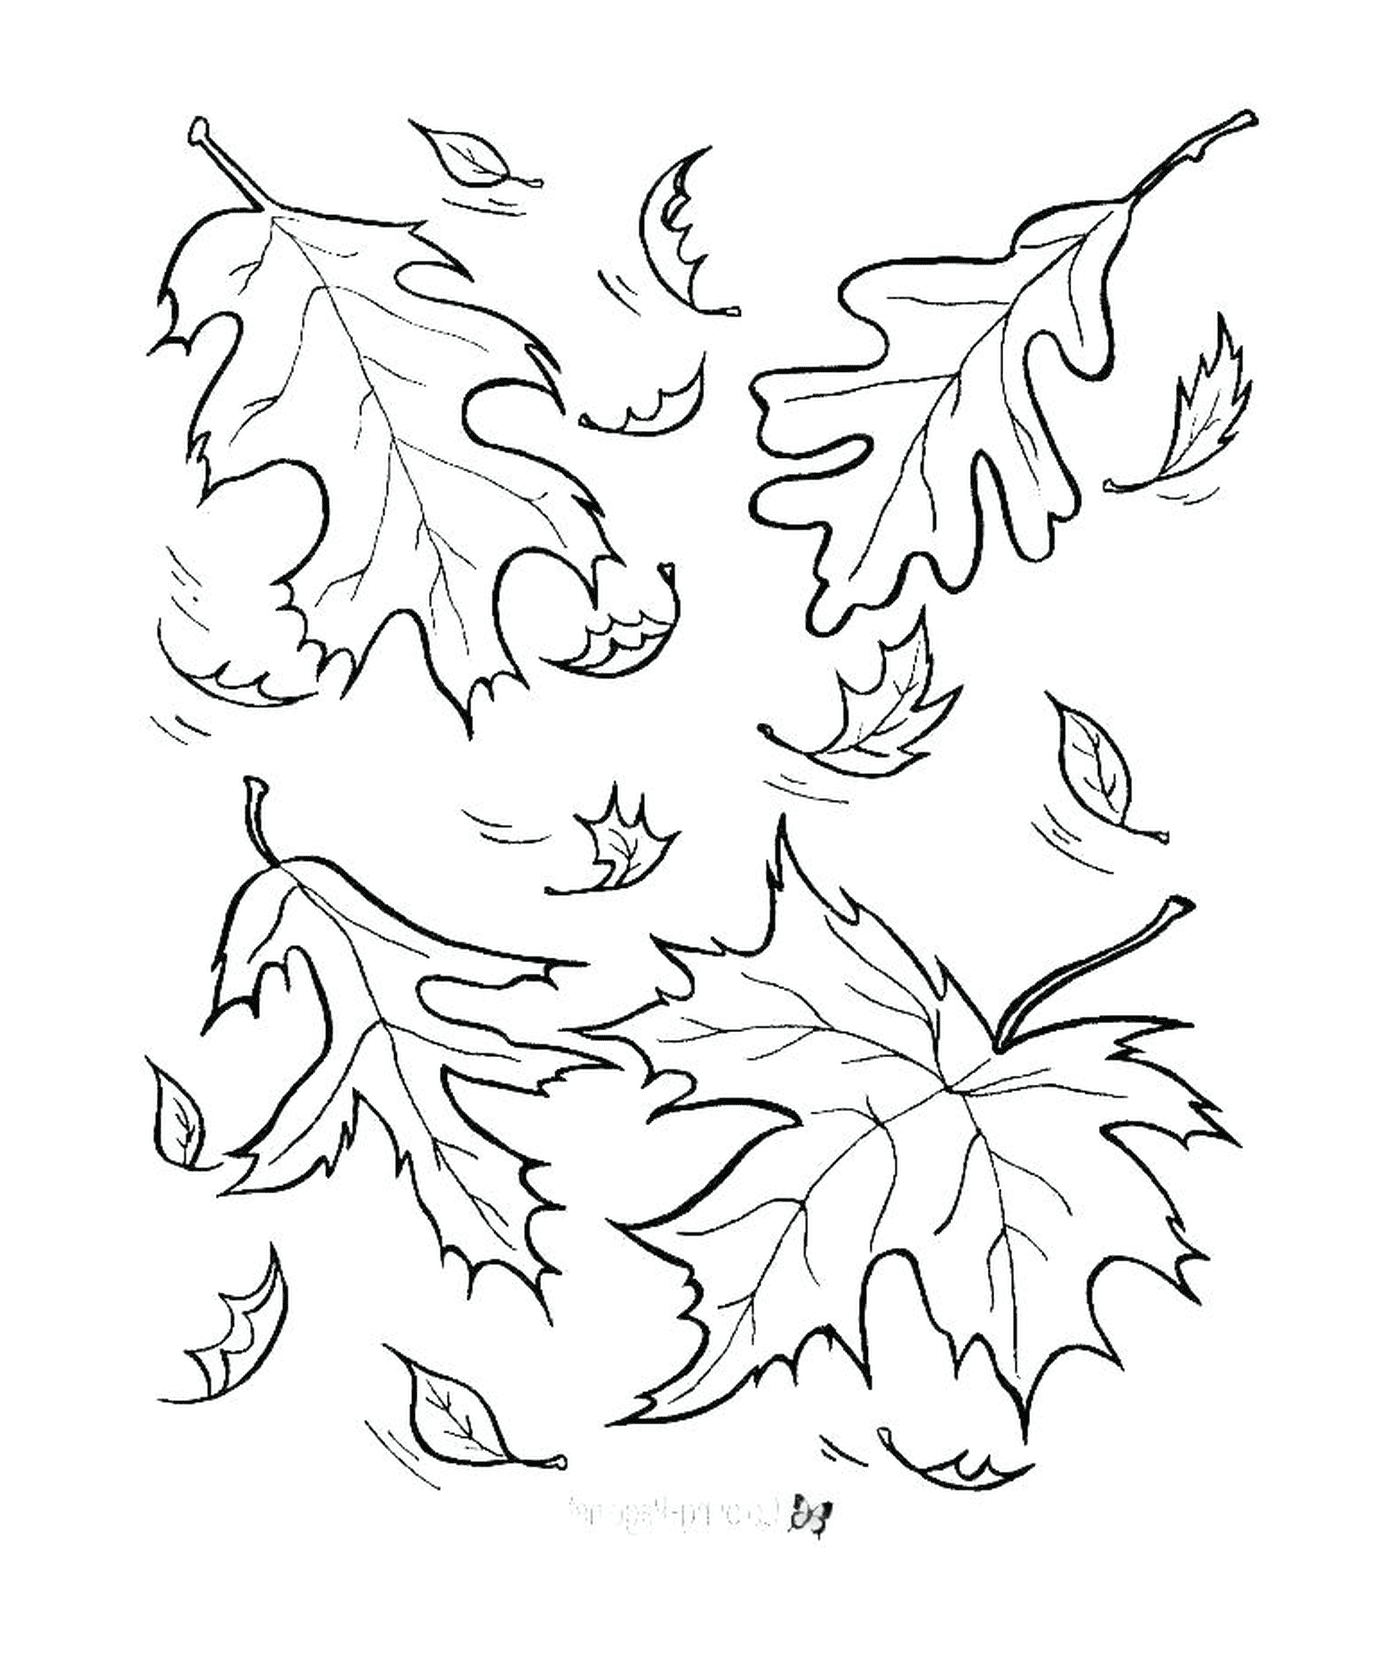   Des feuilles qui tombent dans le vent 